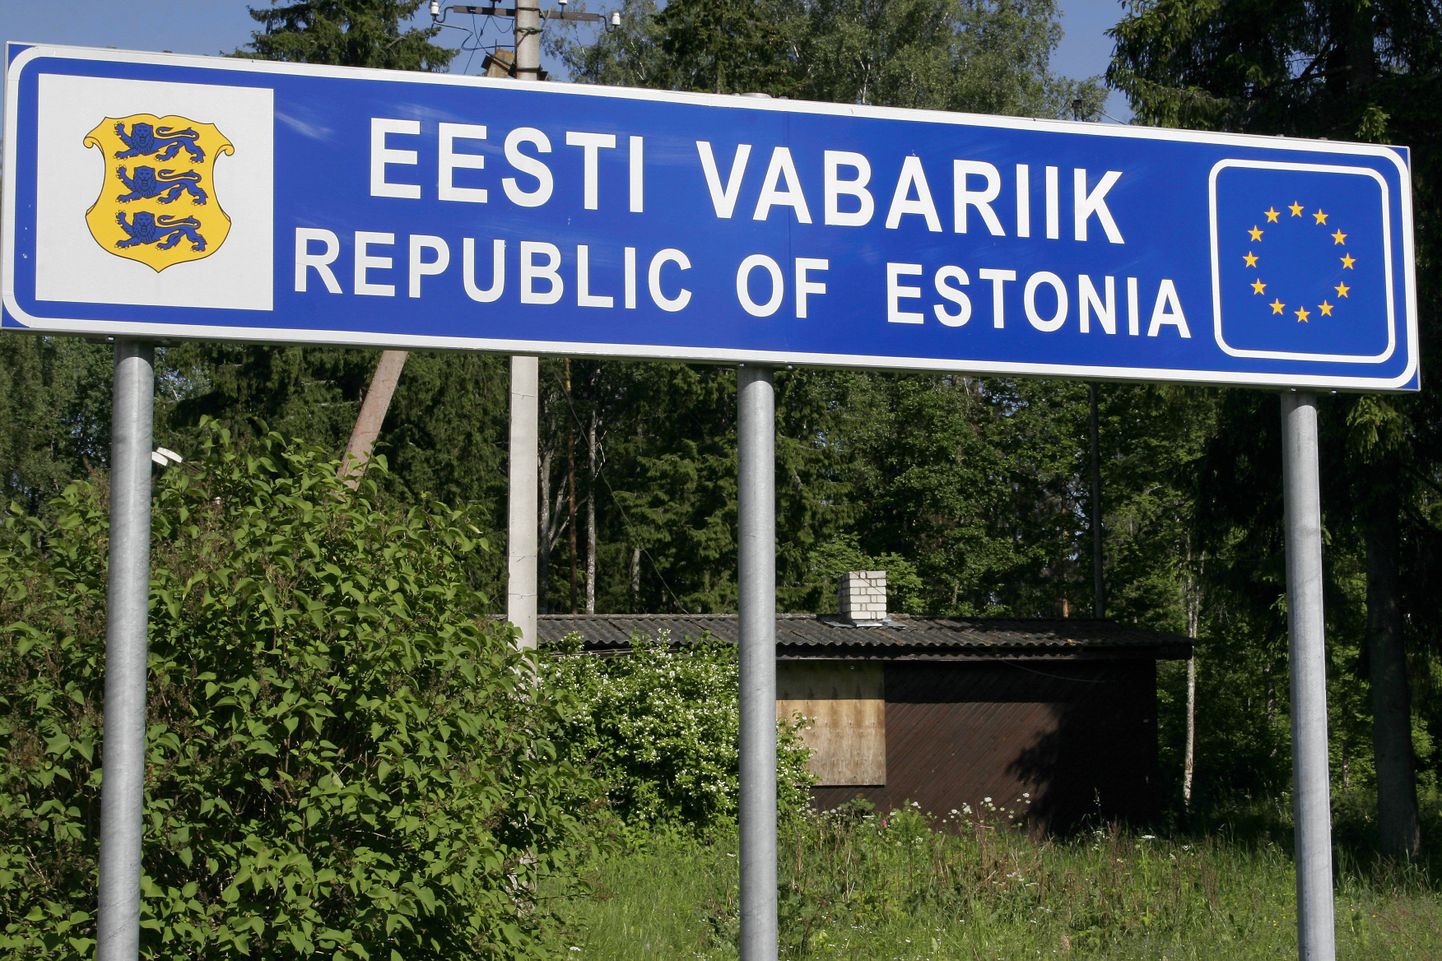 Государственная граница Эстонии.